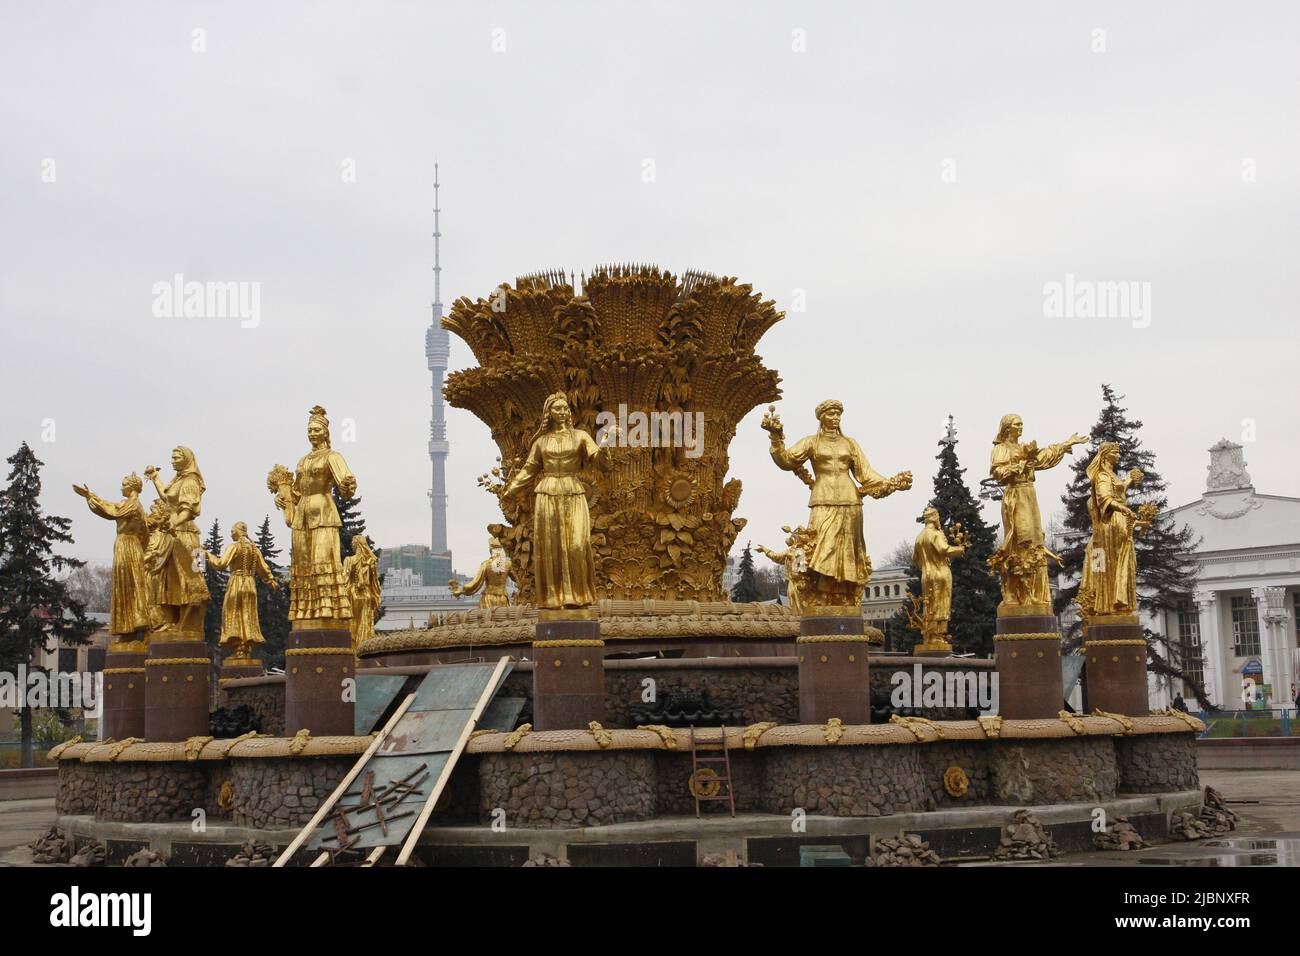 Golden couvrait des statues féminines, symboles de 15 républiques soviétiques en URSS à VDNKh - exposition de l'économie nationale en URSS, toujours populaire à Moscou. Banque D'Images